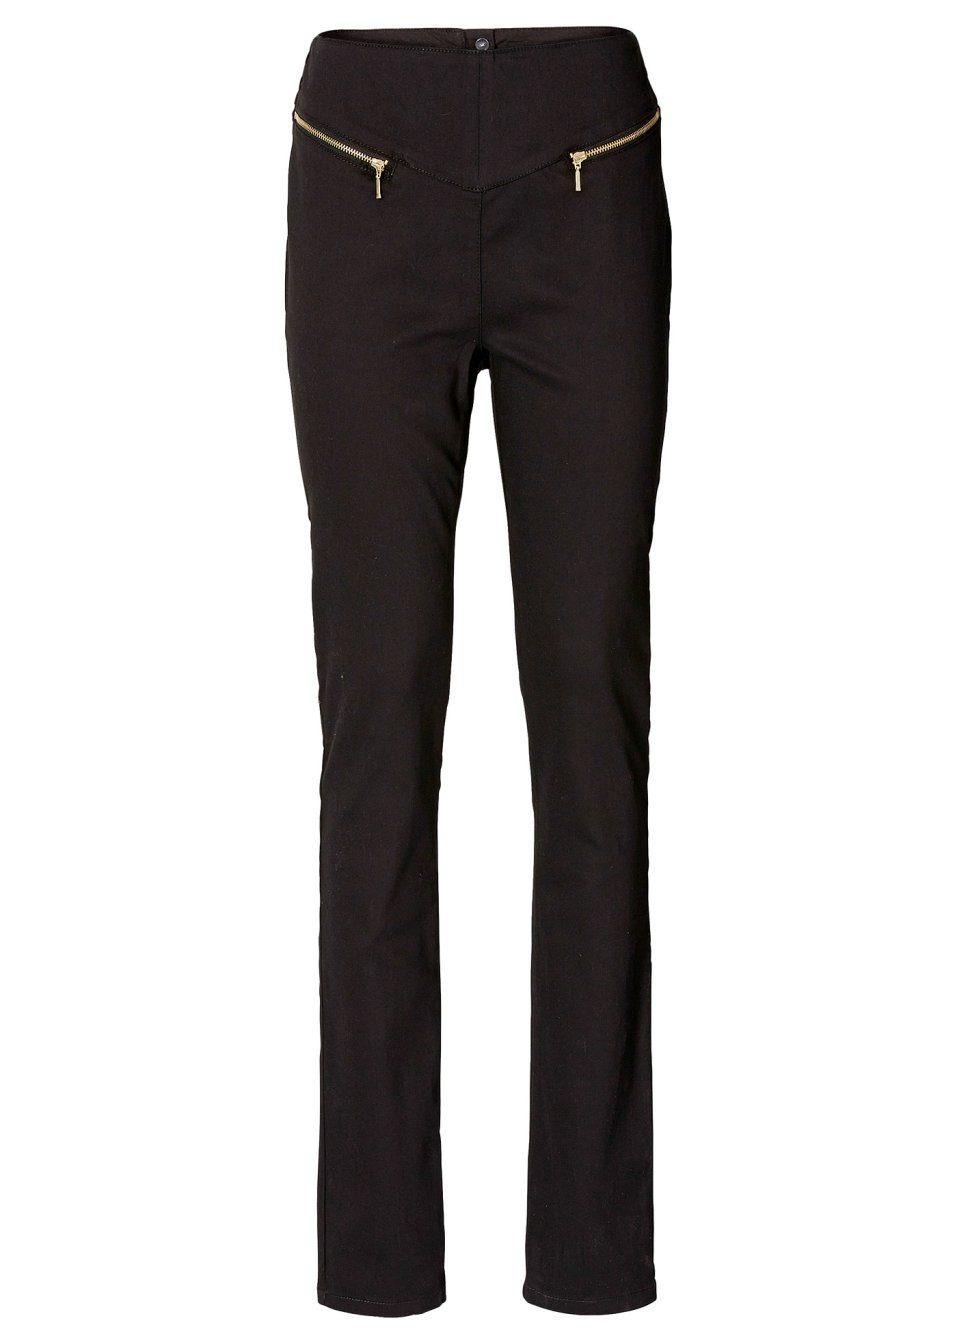 YESET Röhrenhose Jeans schwarz Chino Röhre 913689 Bund 36 Stretch Hose hoher Gr. Damen